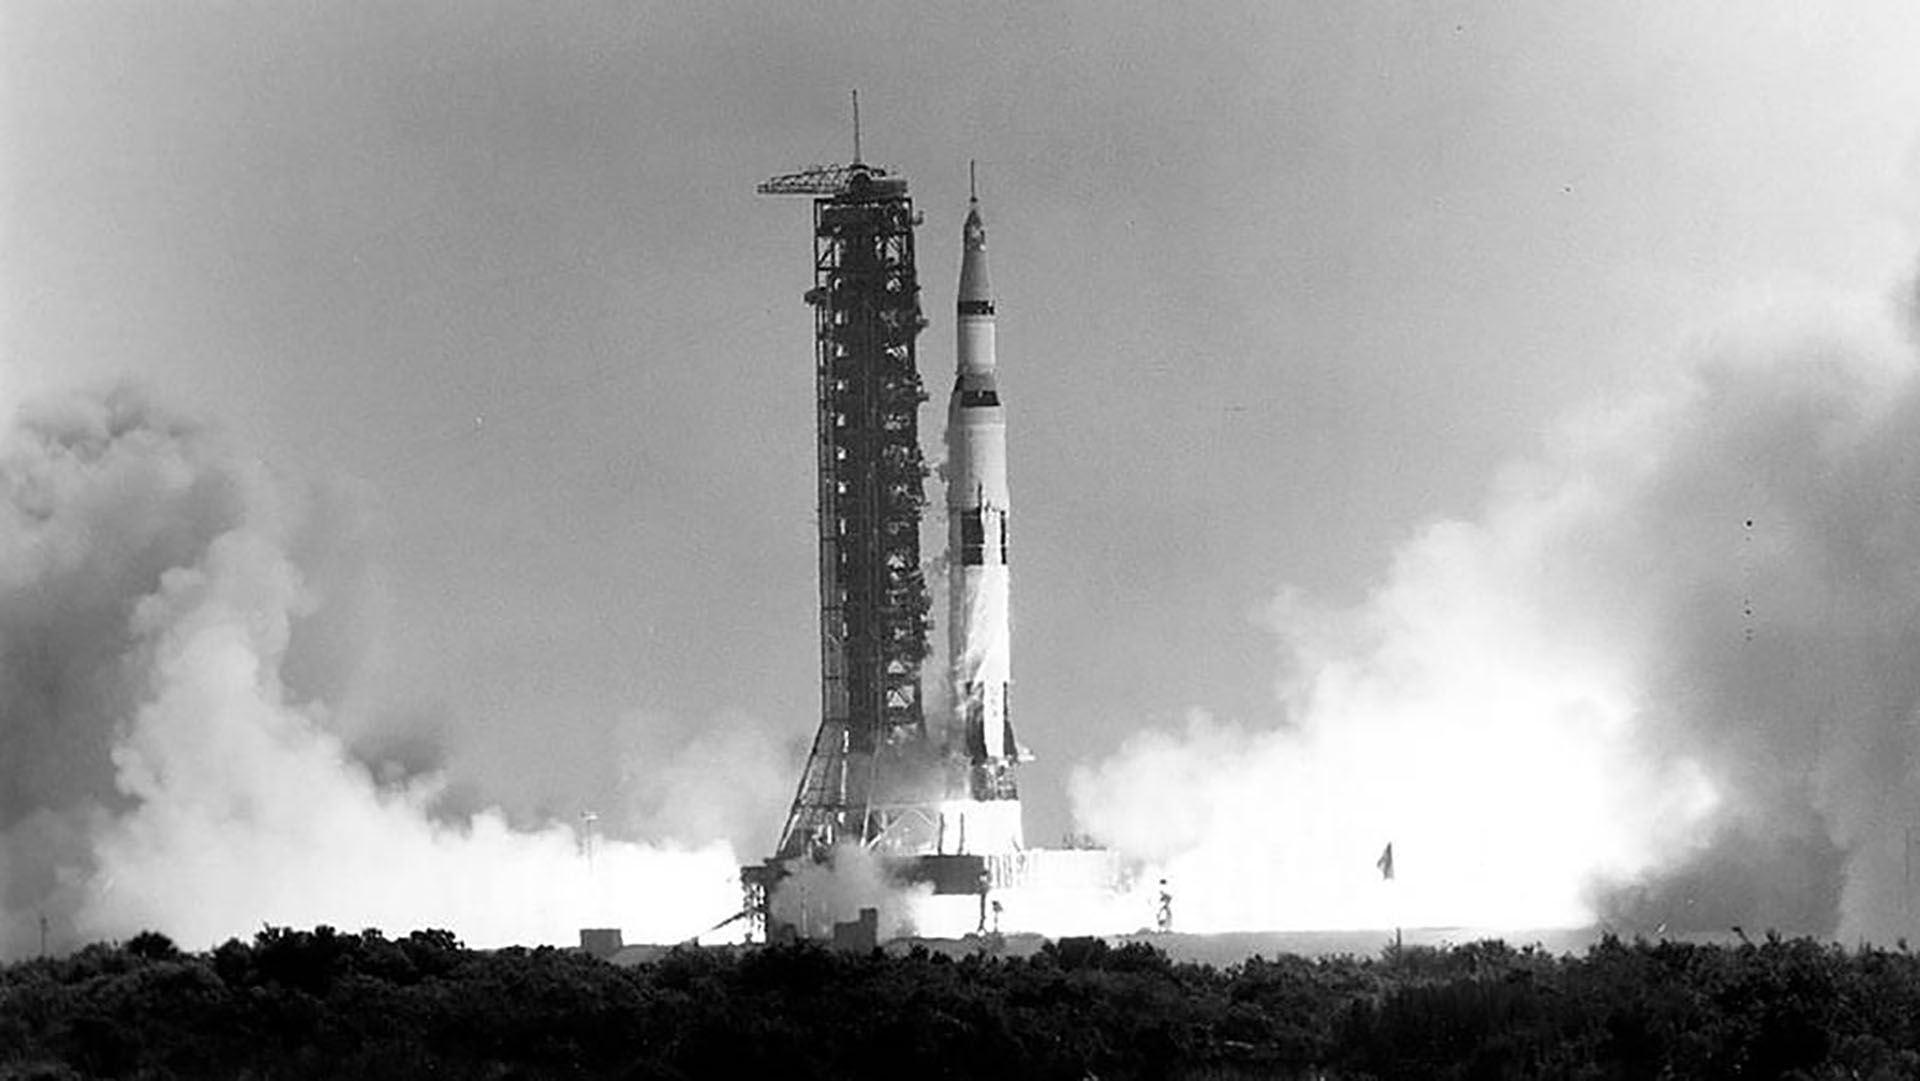 Armstrong y Aldrin se convirtieron en los primeros humanos en pisar la Luna, mientras que Michael Collins permaneció a bordo del módulo de mando en órbita lunar. (Foto por HO / NASA / AFP) 